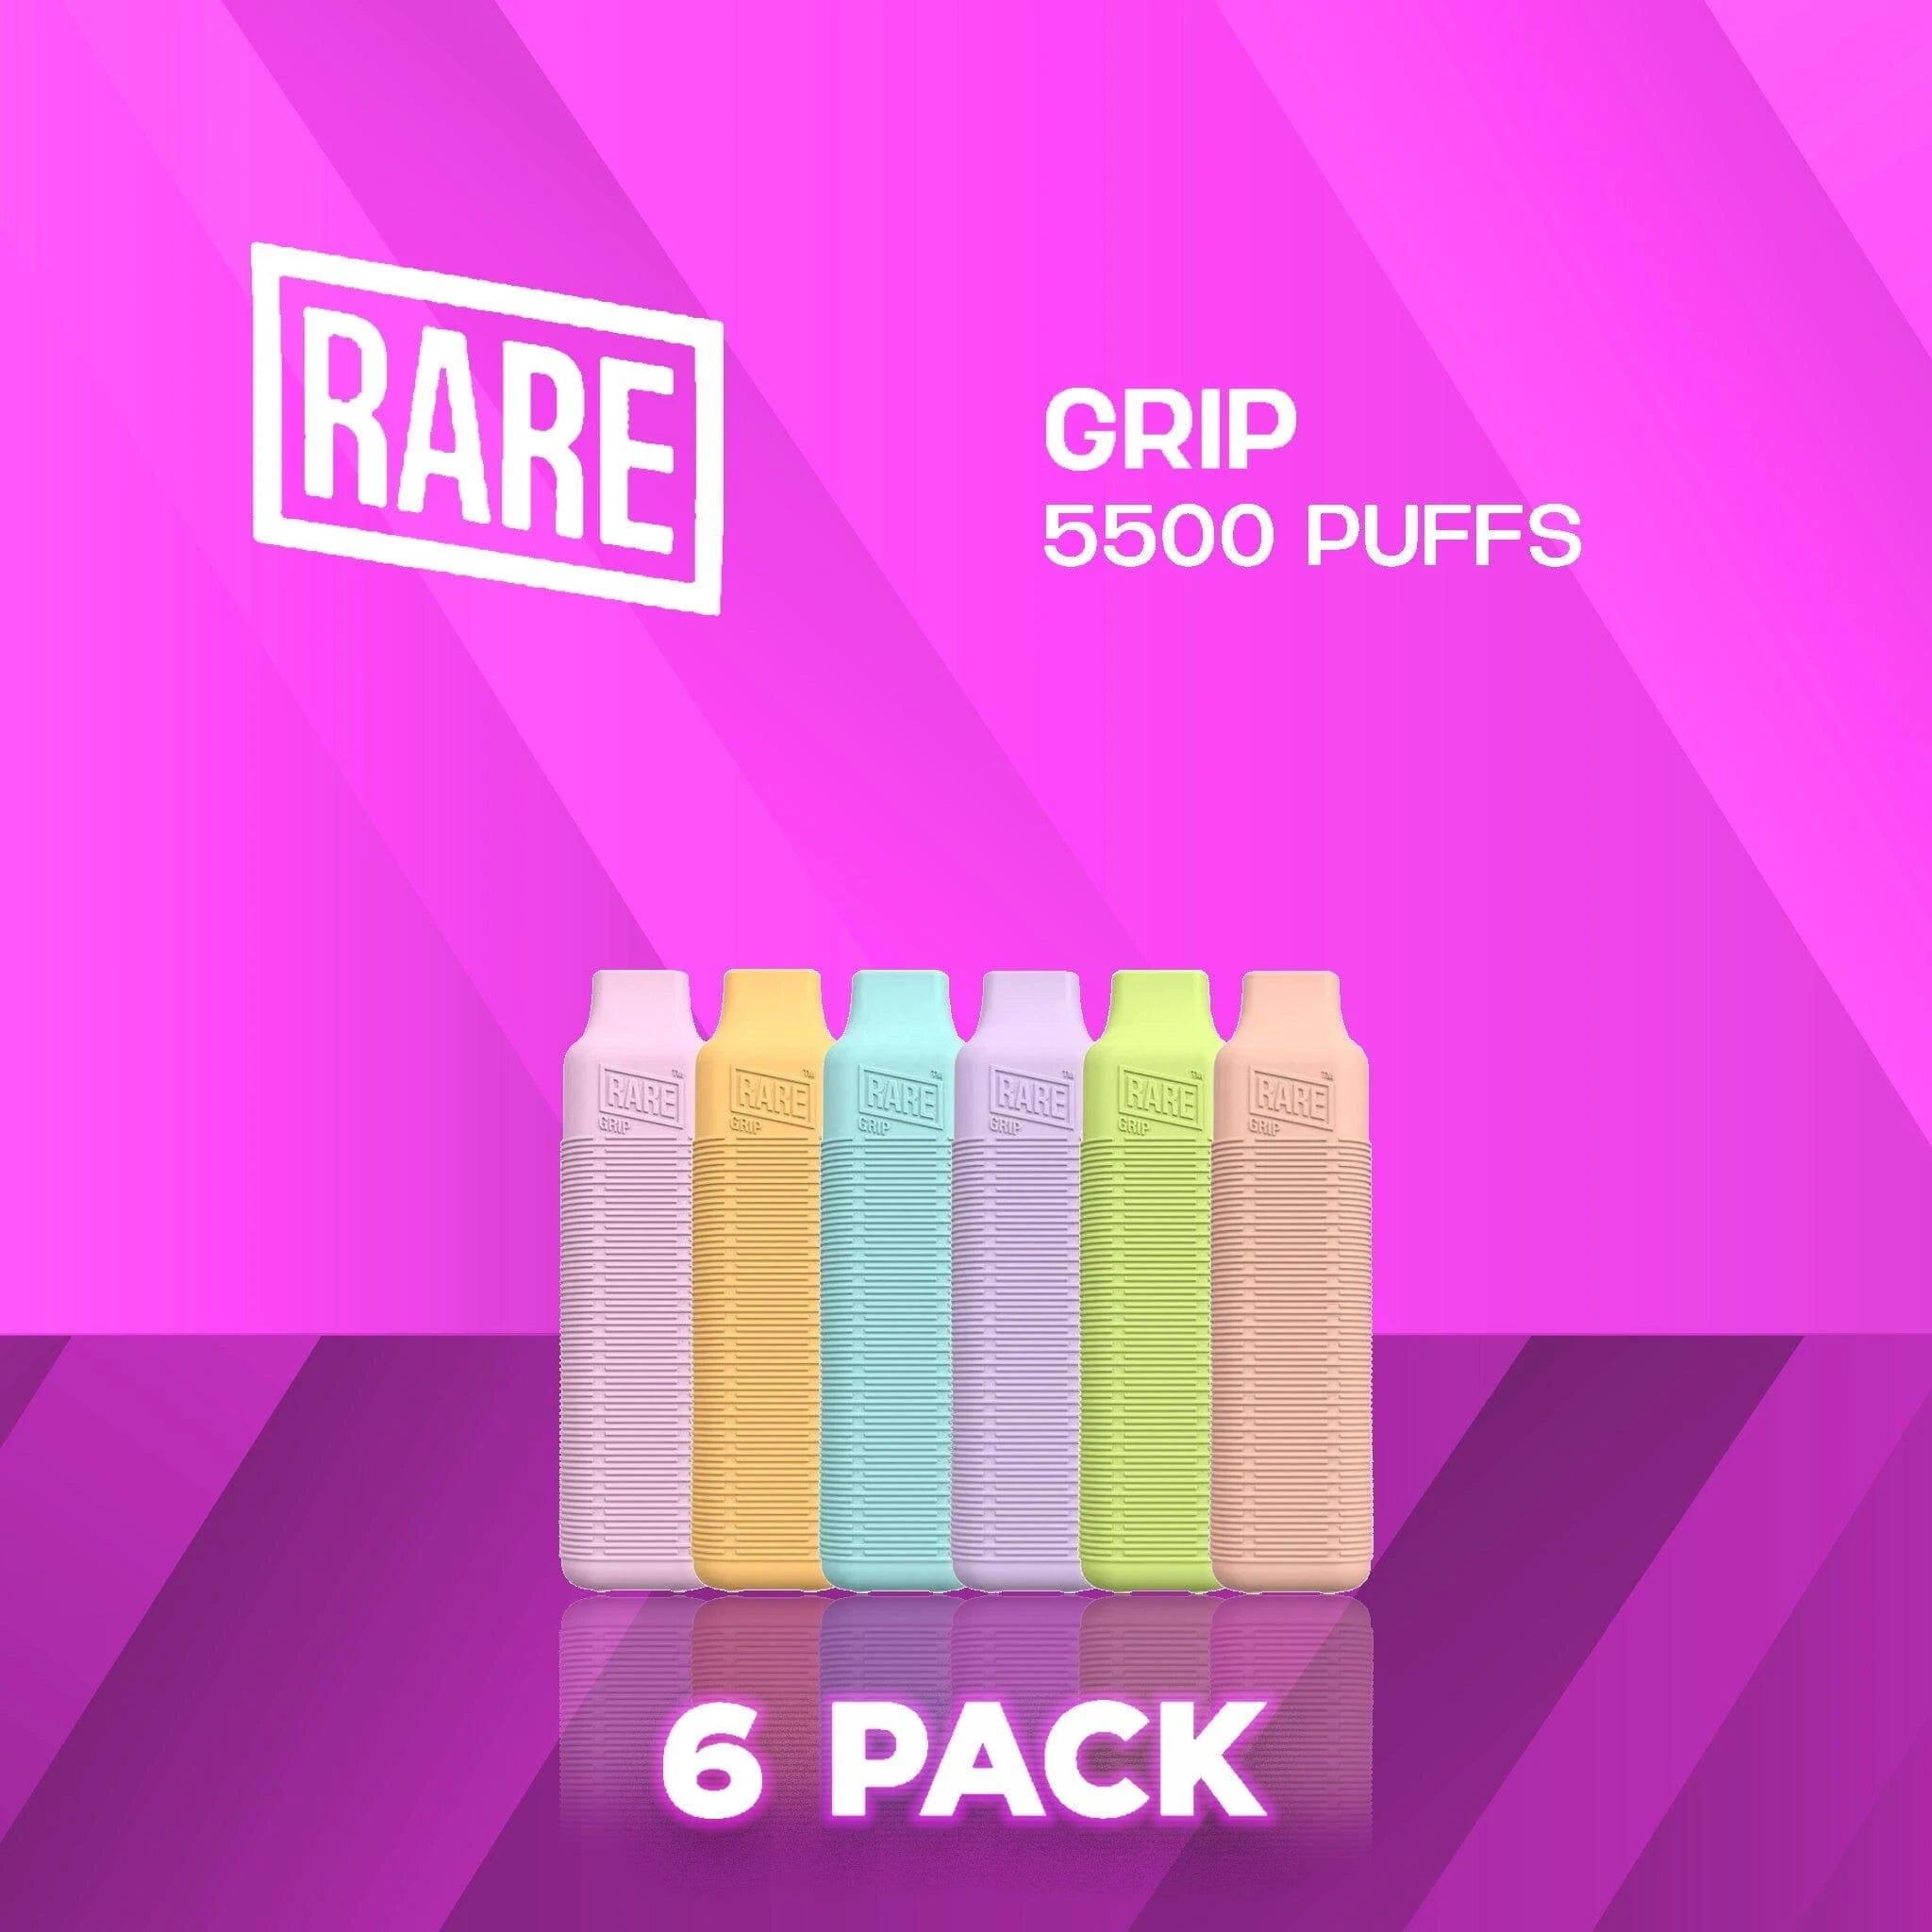 Rare Grip 5500 Puffs Disposable Vape - 10 Pack